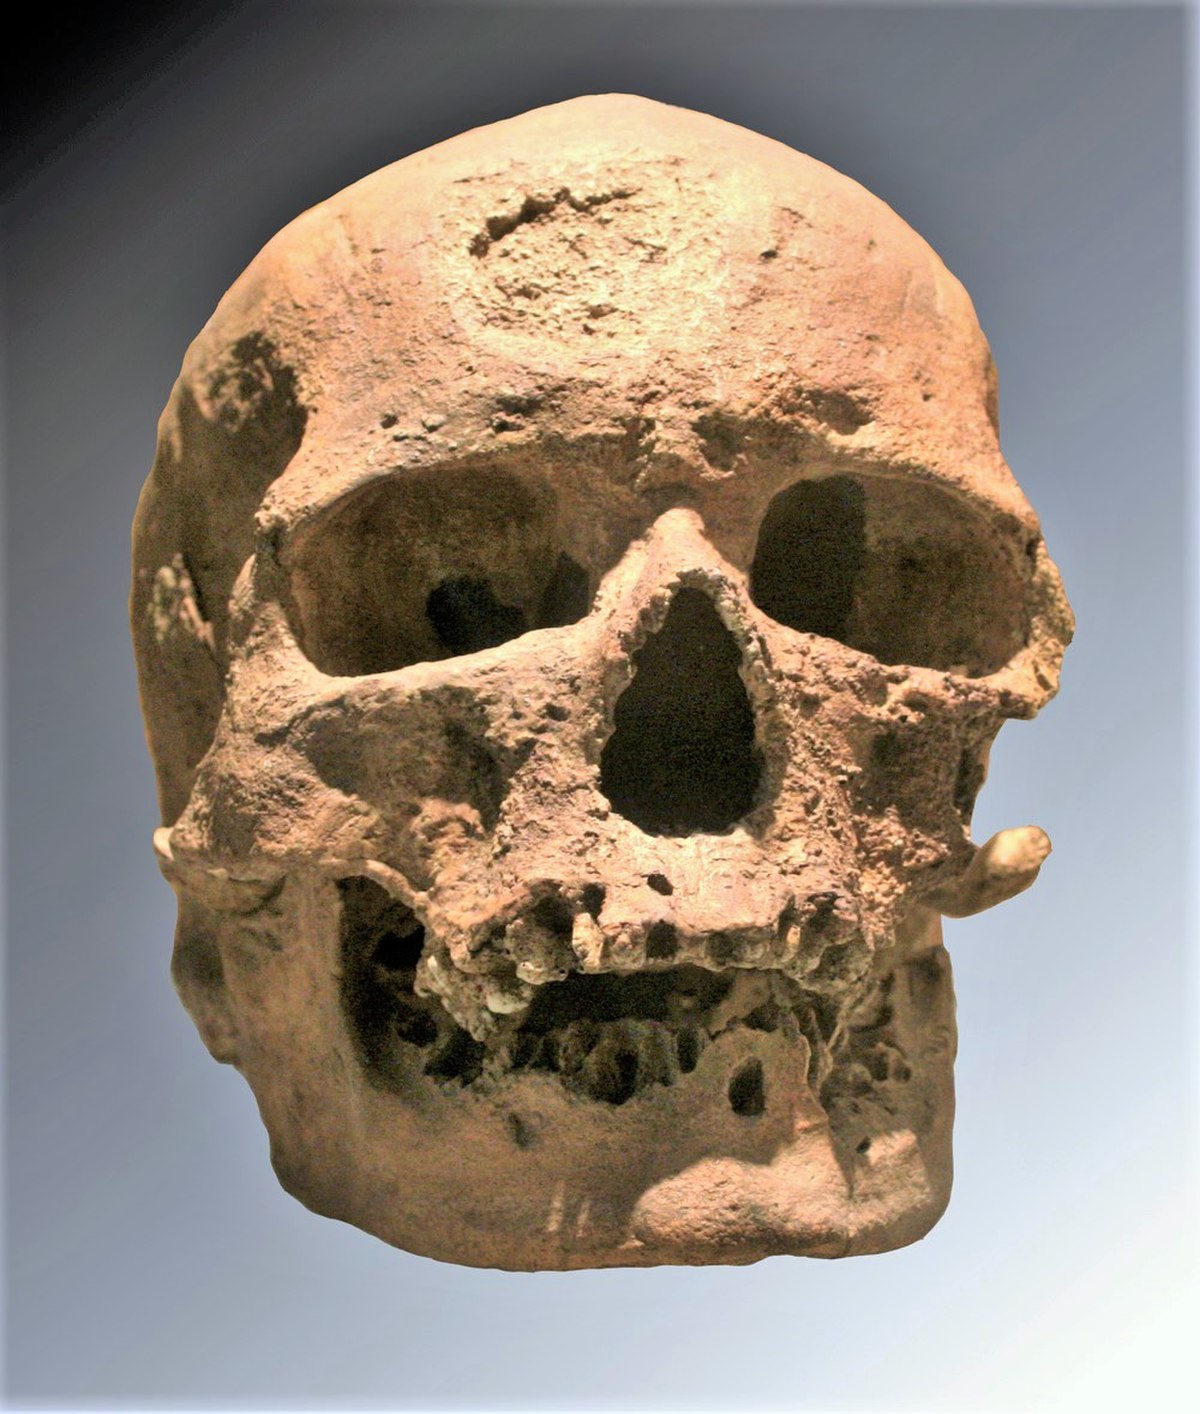  Crâne de l'un des individus découverts dans l'abri de Cro-Magnon (moulage)